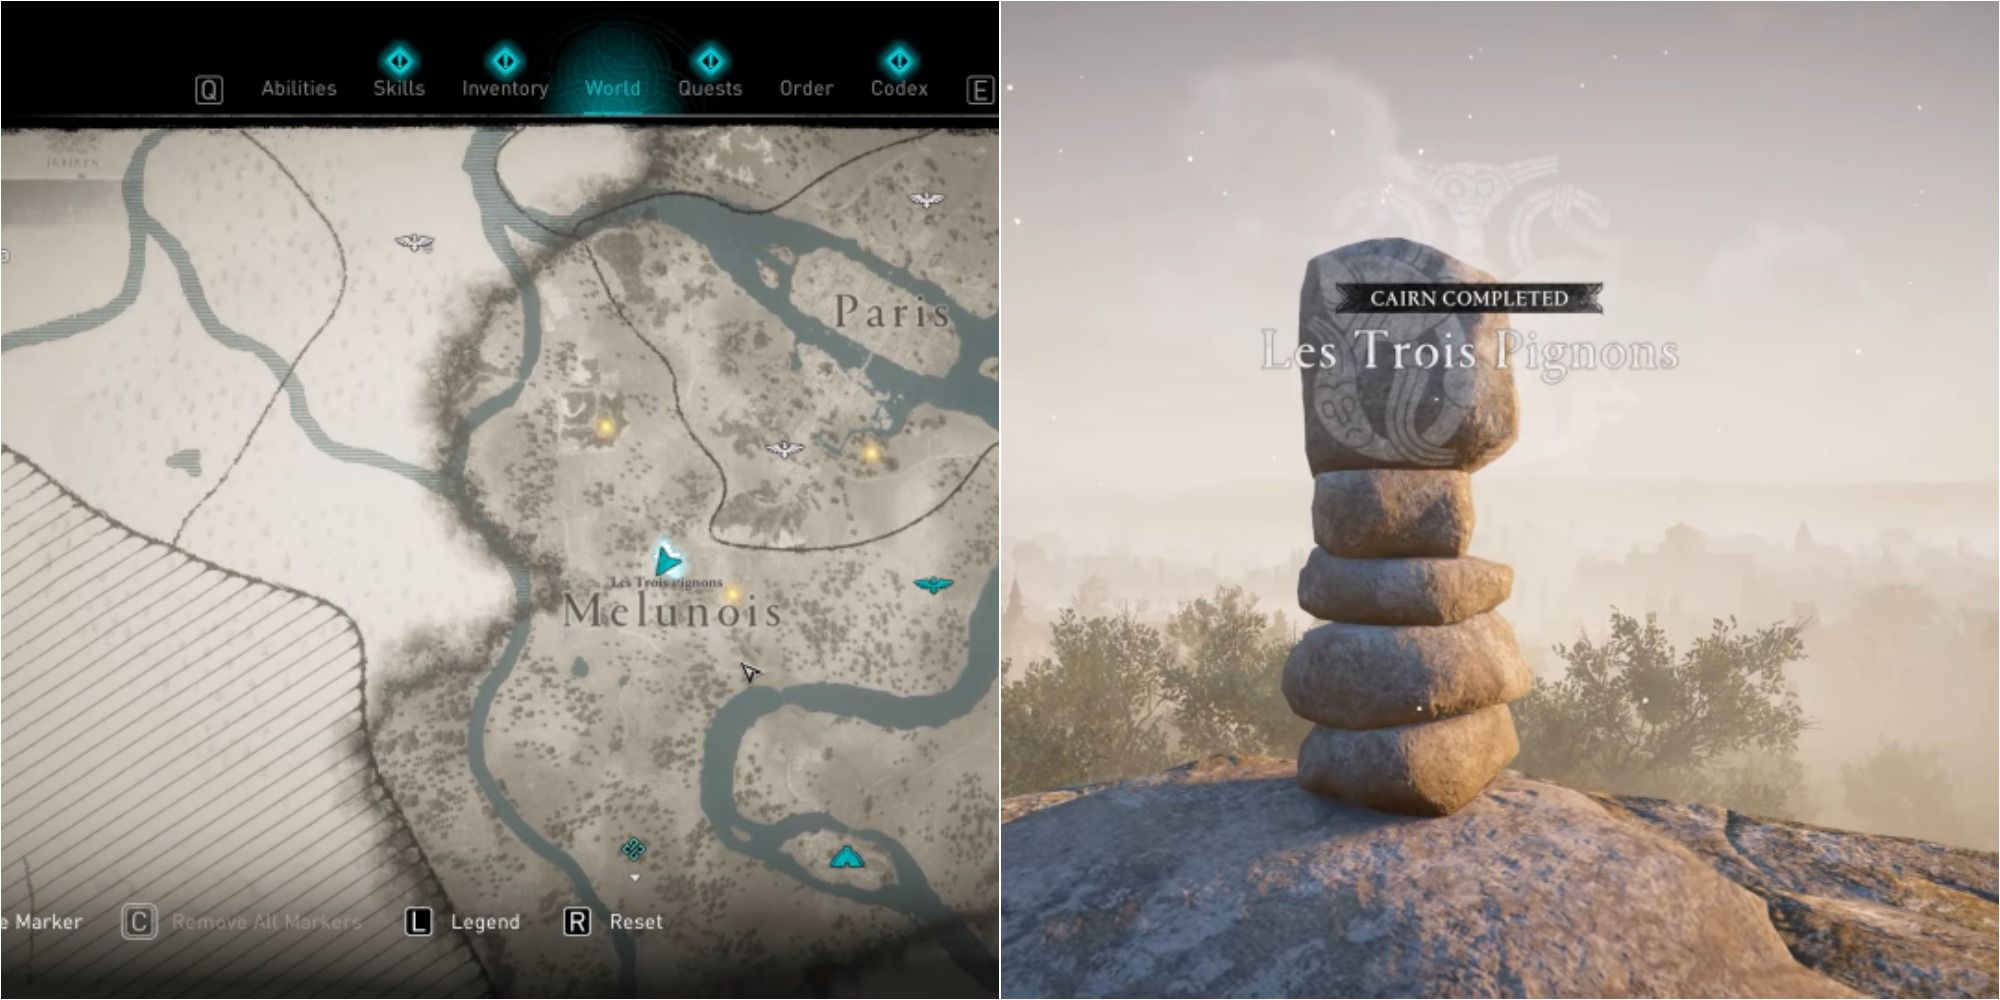 Assassin's Creed Valhalla Split Image Showing Les Trois Pignons Cairn